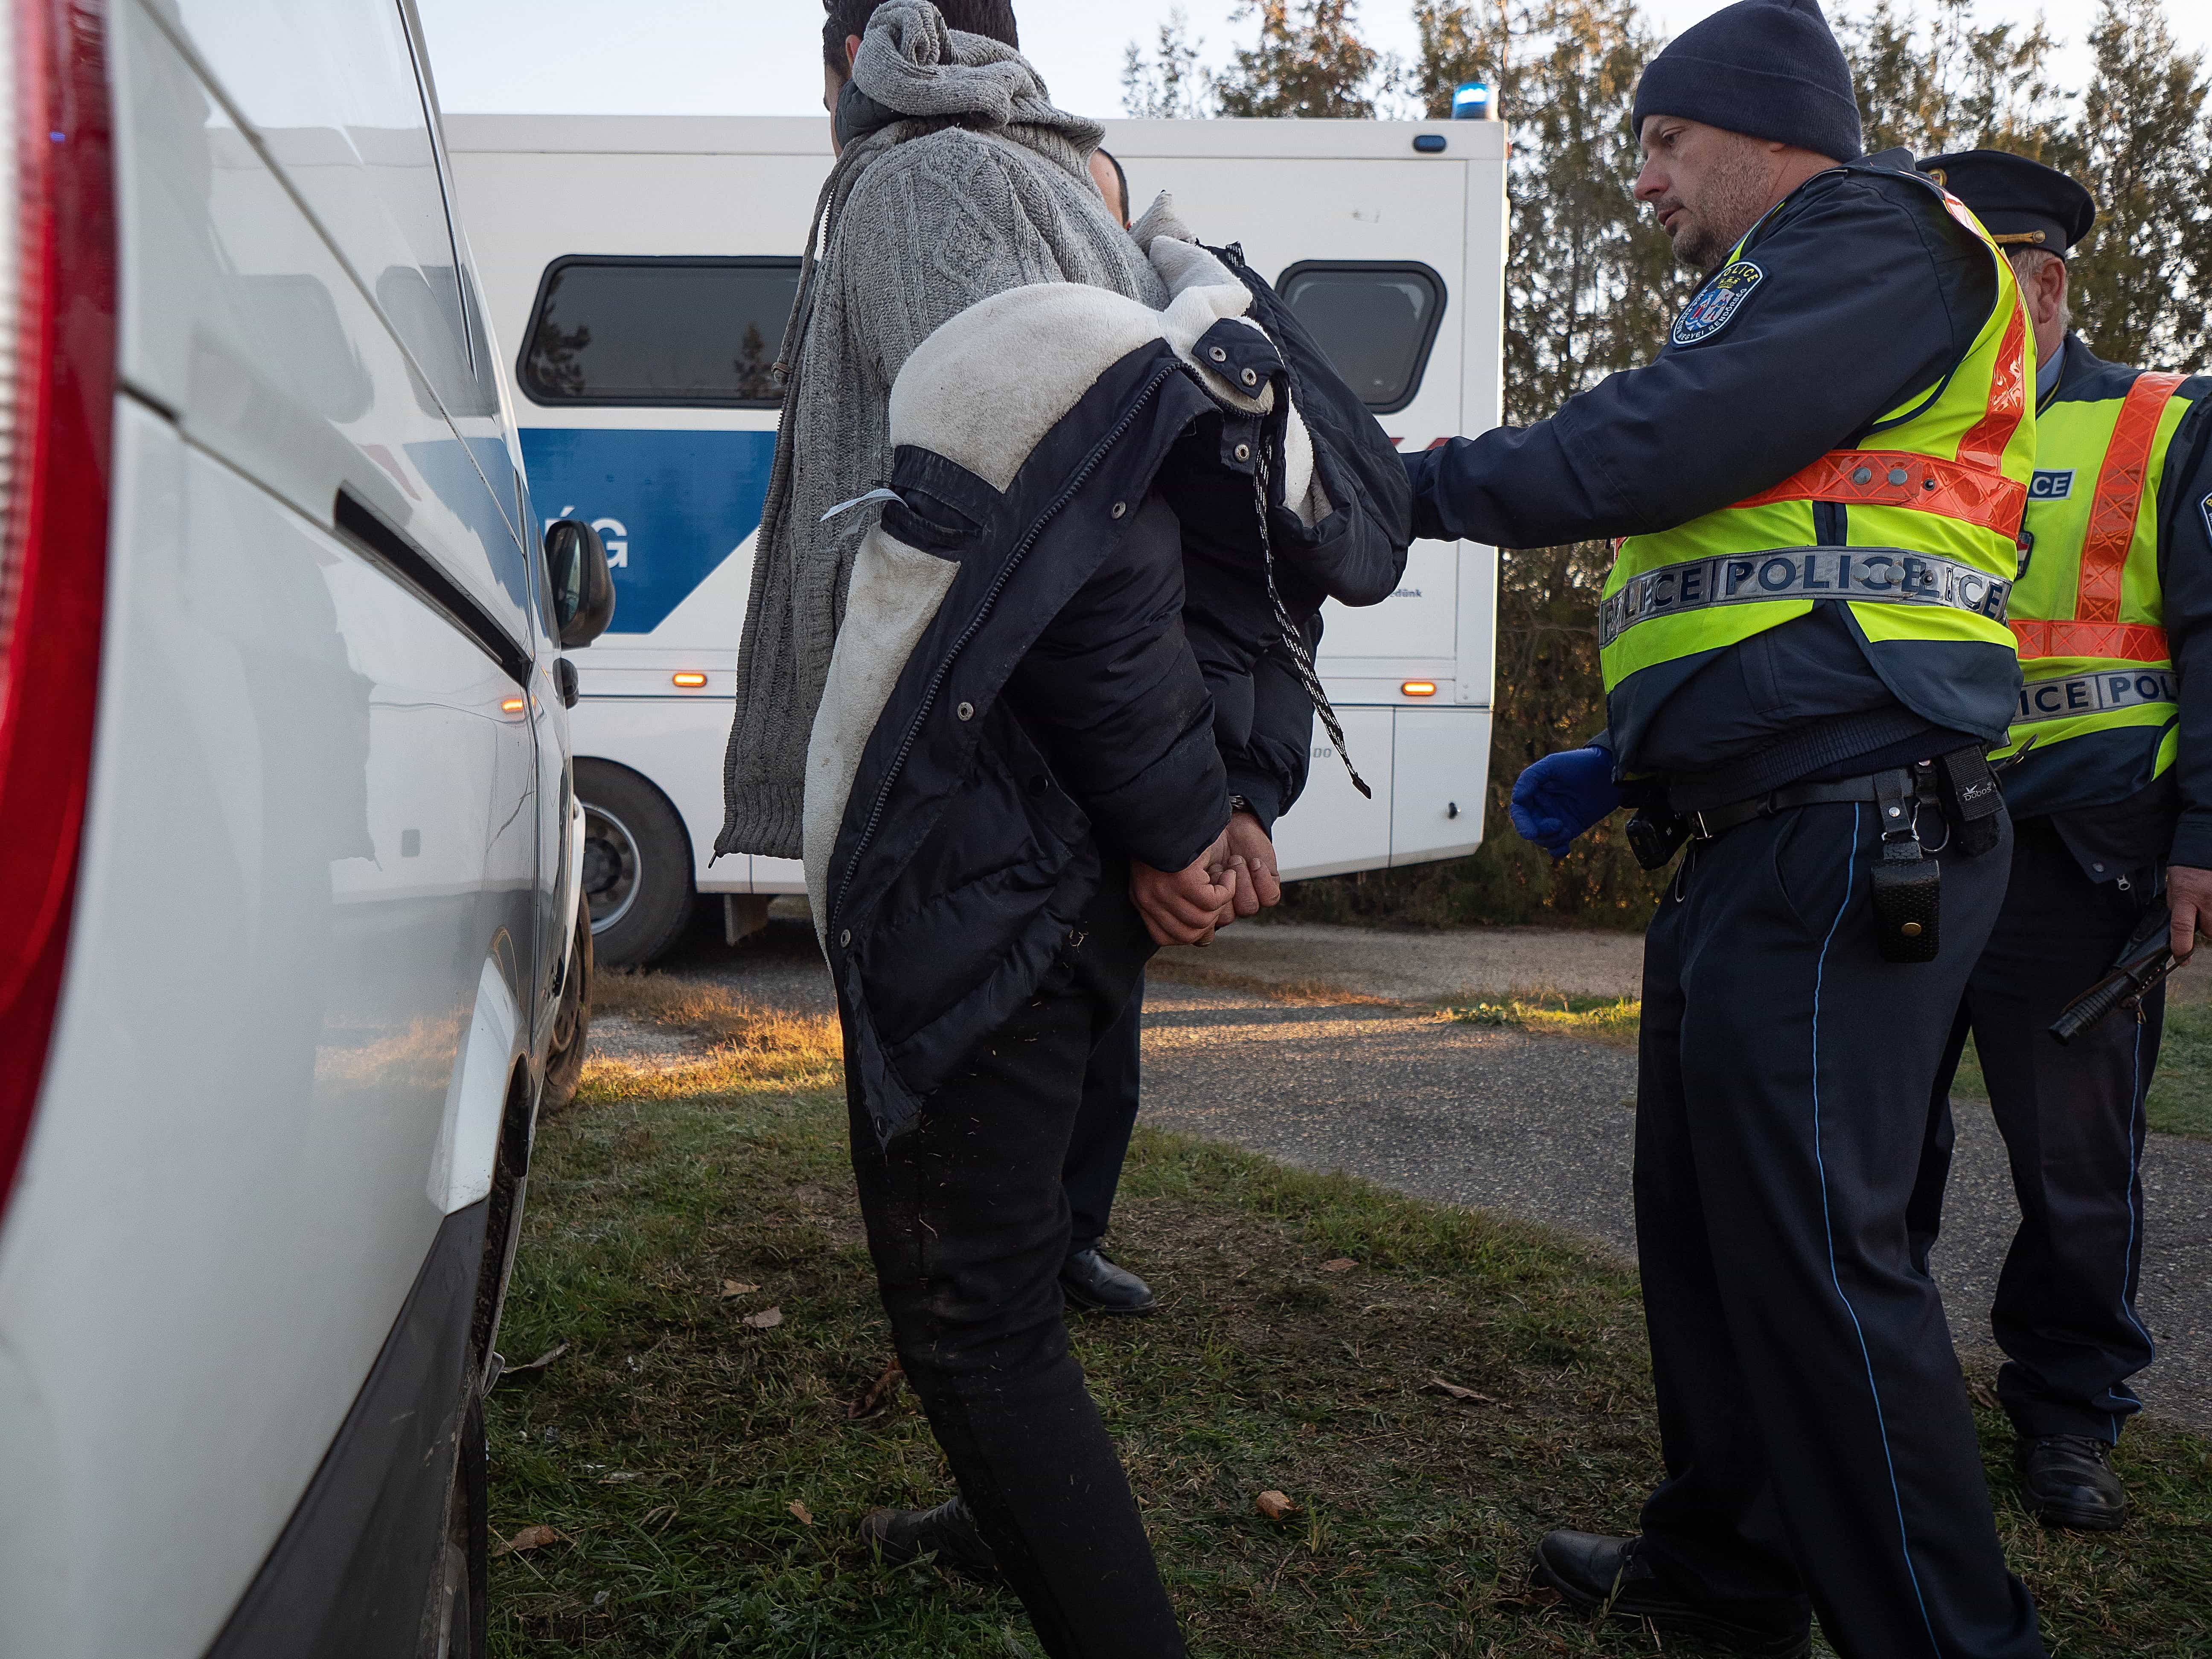 A rendőrök szélmalomharcot vívnak a csempészekkel, akik egyre többen vannak / Fotó: MTI/Donka Ferenc